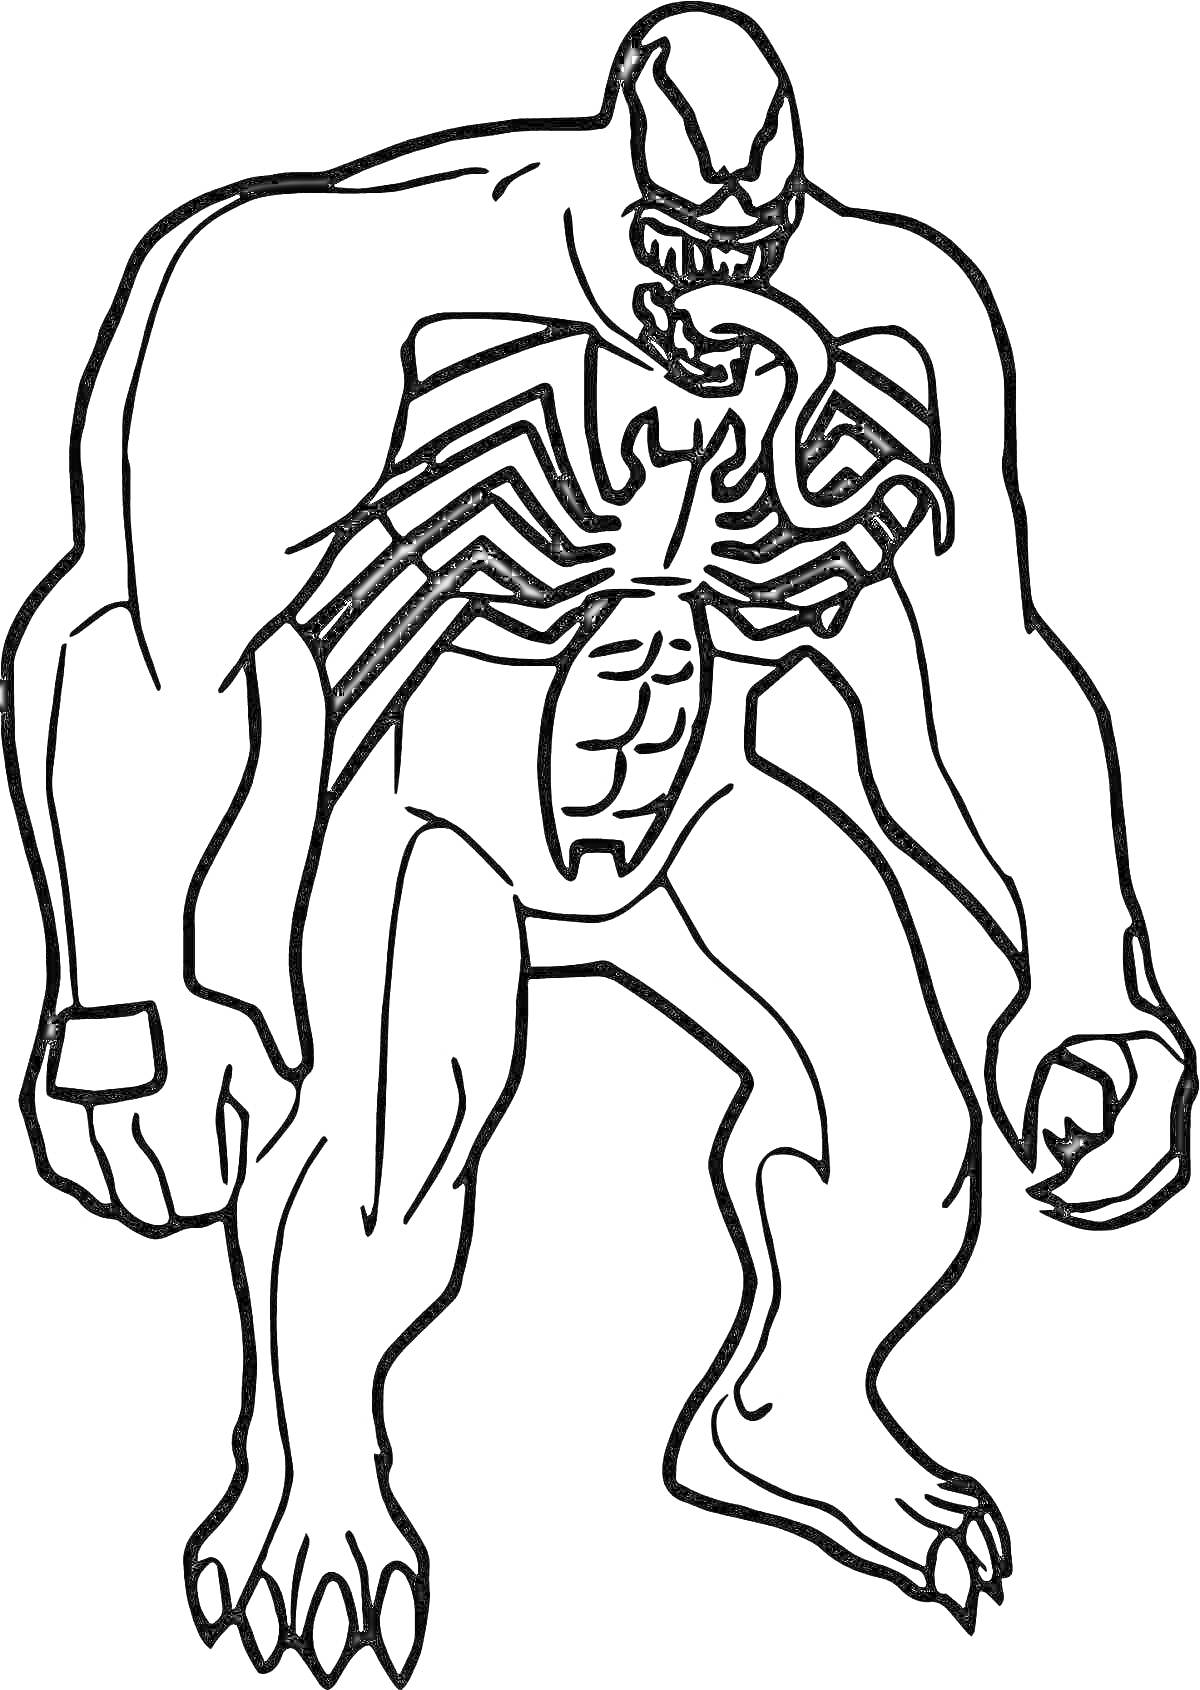 Раскраска Веном в агрессивной позе с длинным языком и паучьим символом на груди